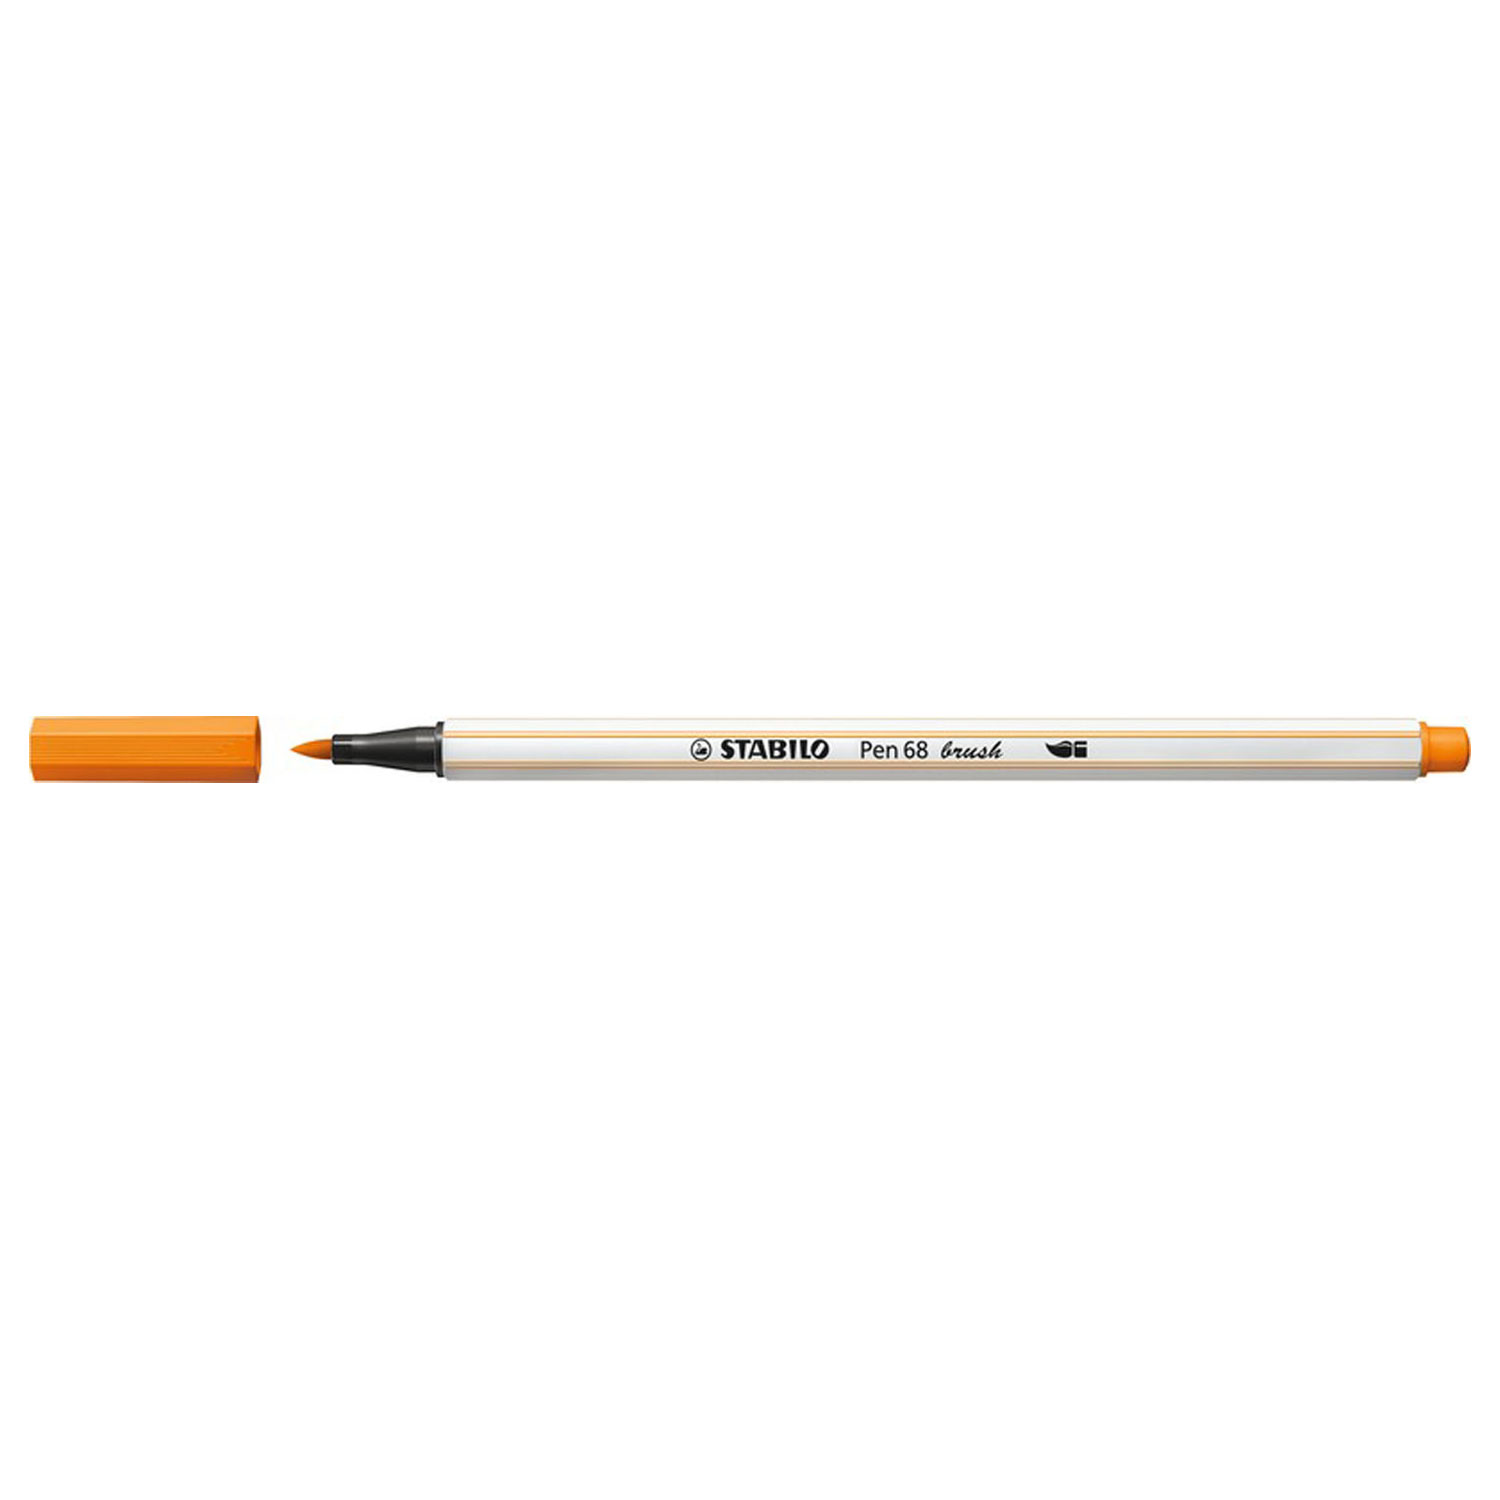 STABILO Pen 68 Brush 54 - Oranje